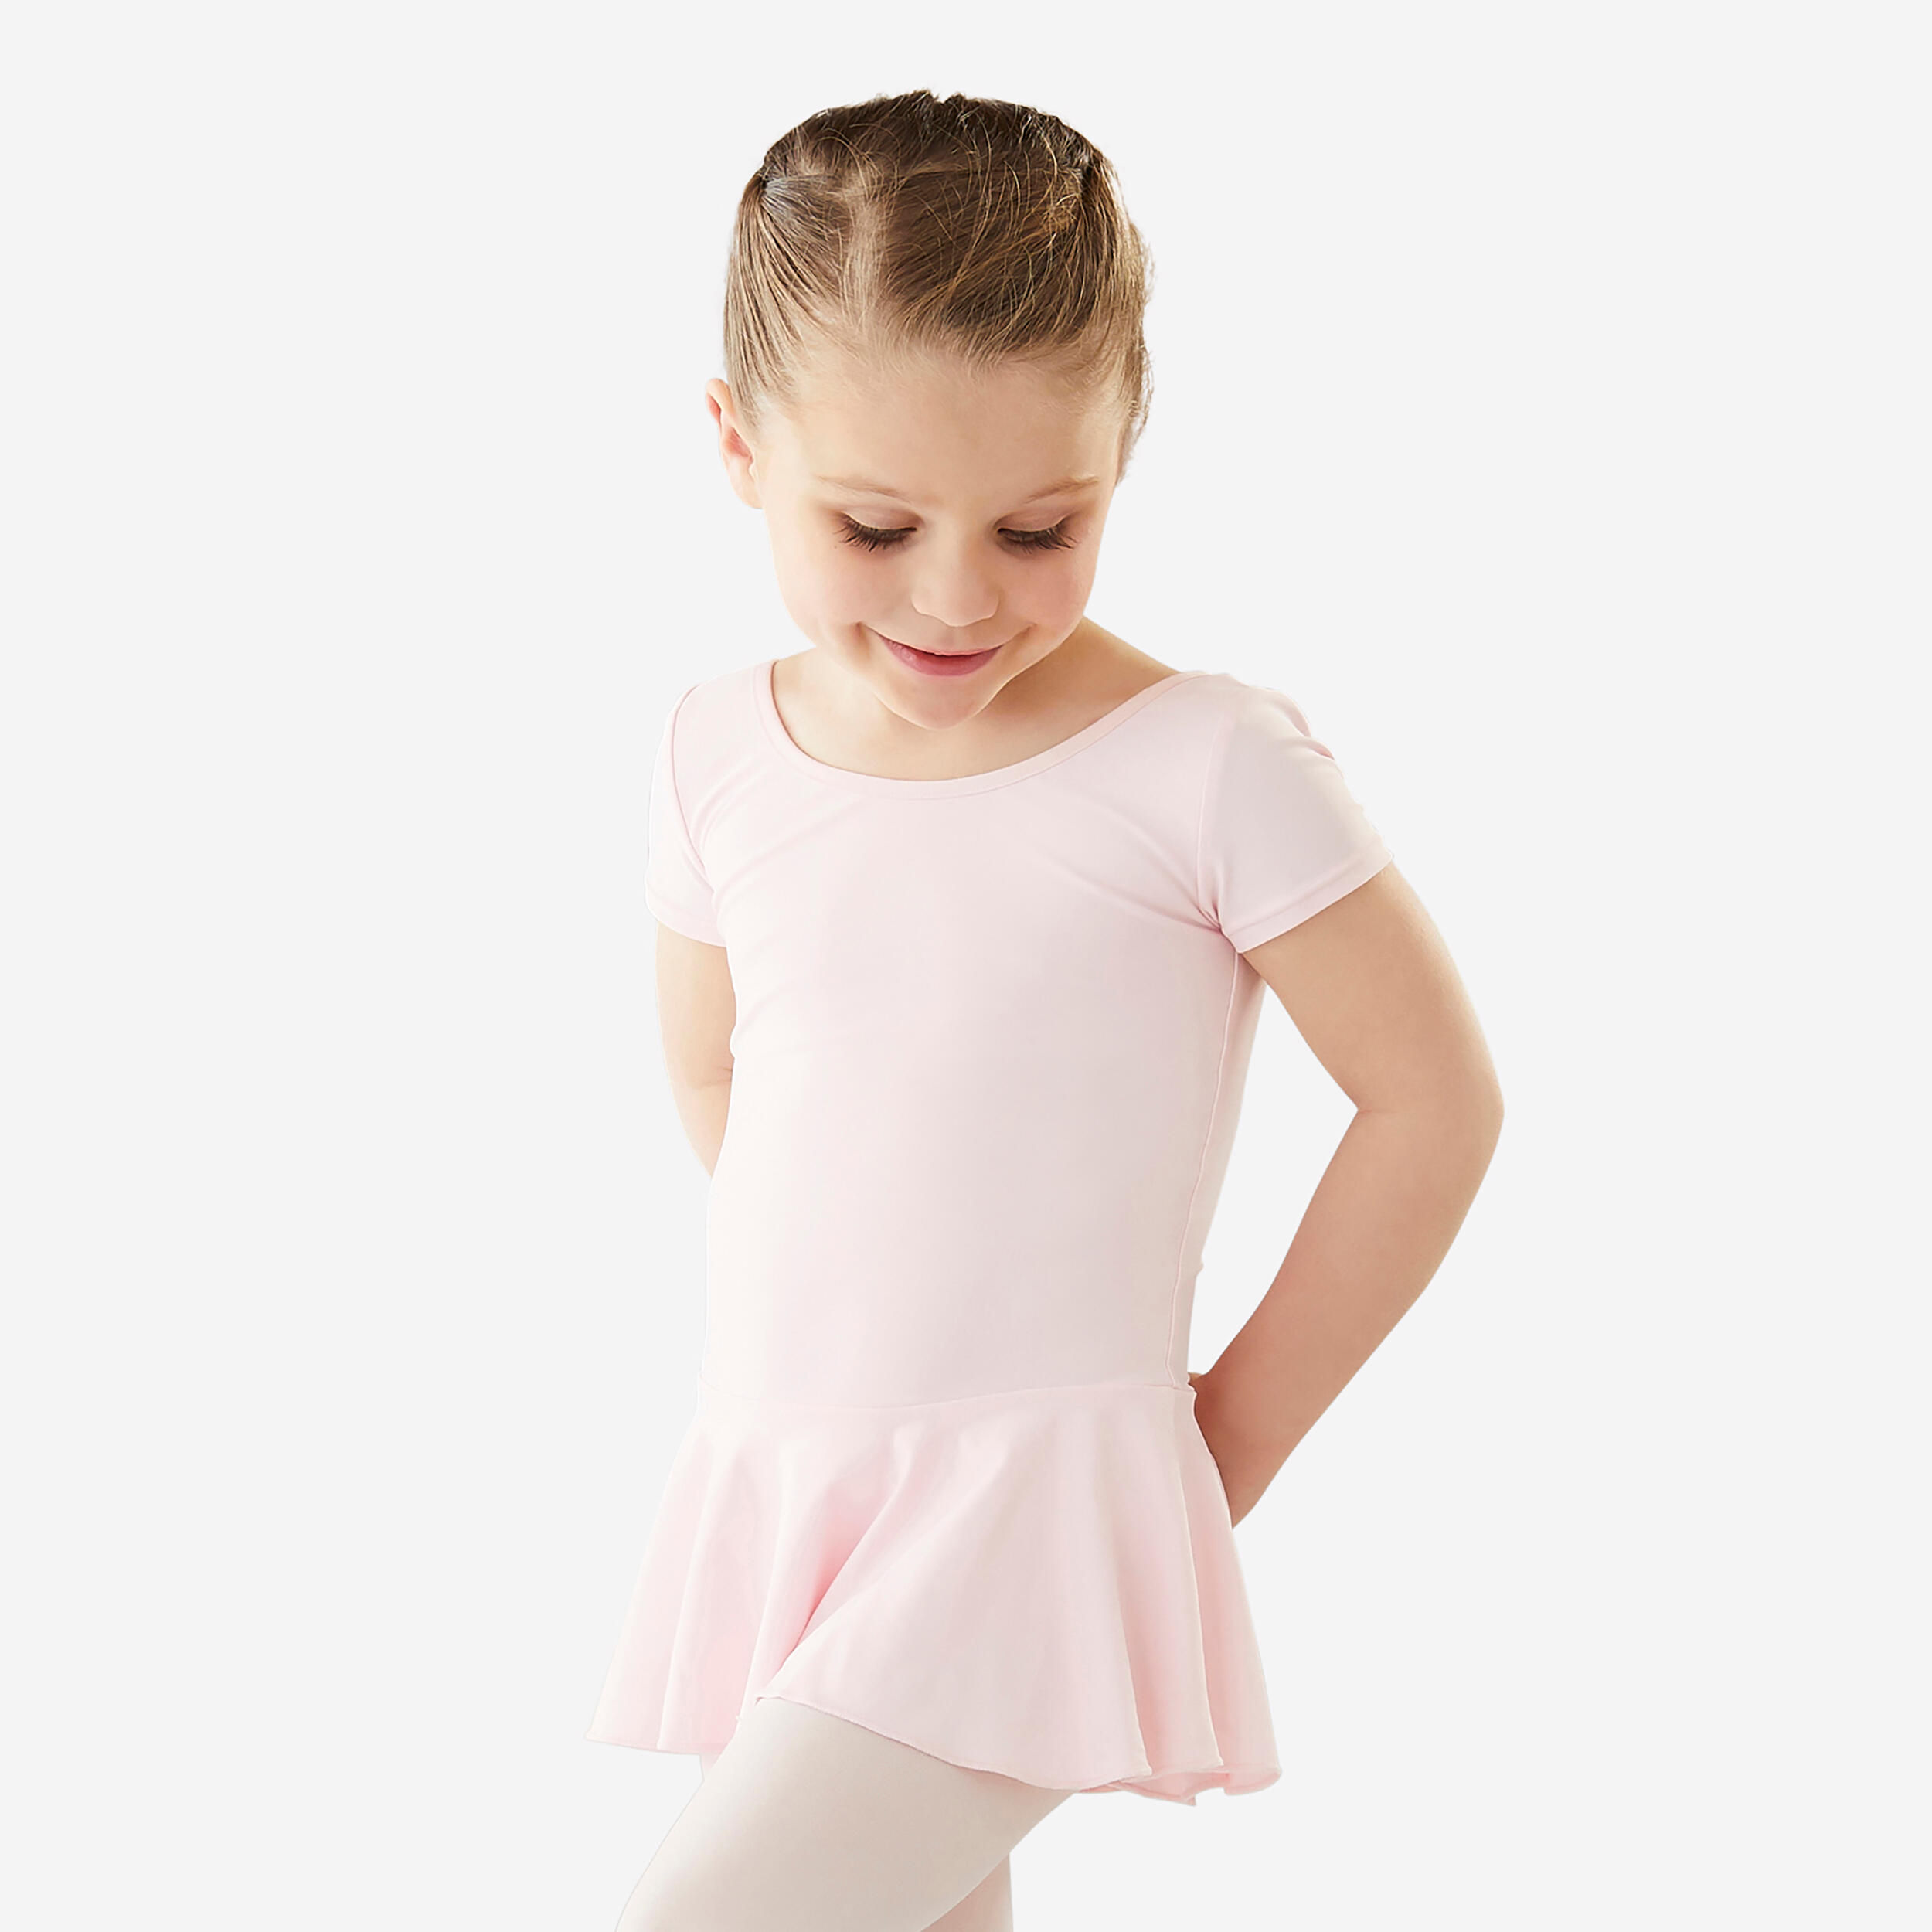 STAREVER Girls' Ballet Skirted Leotard - Light Pink